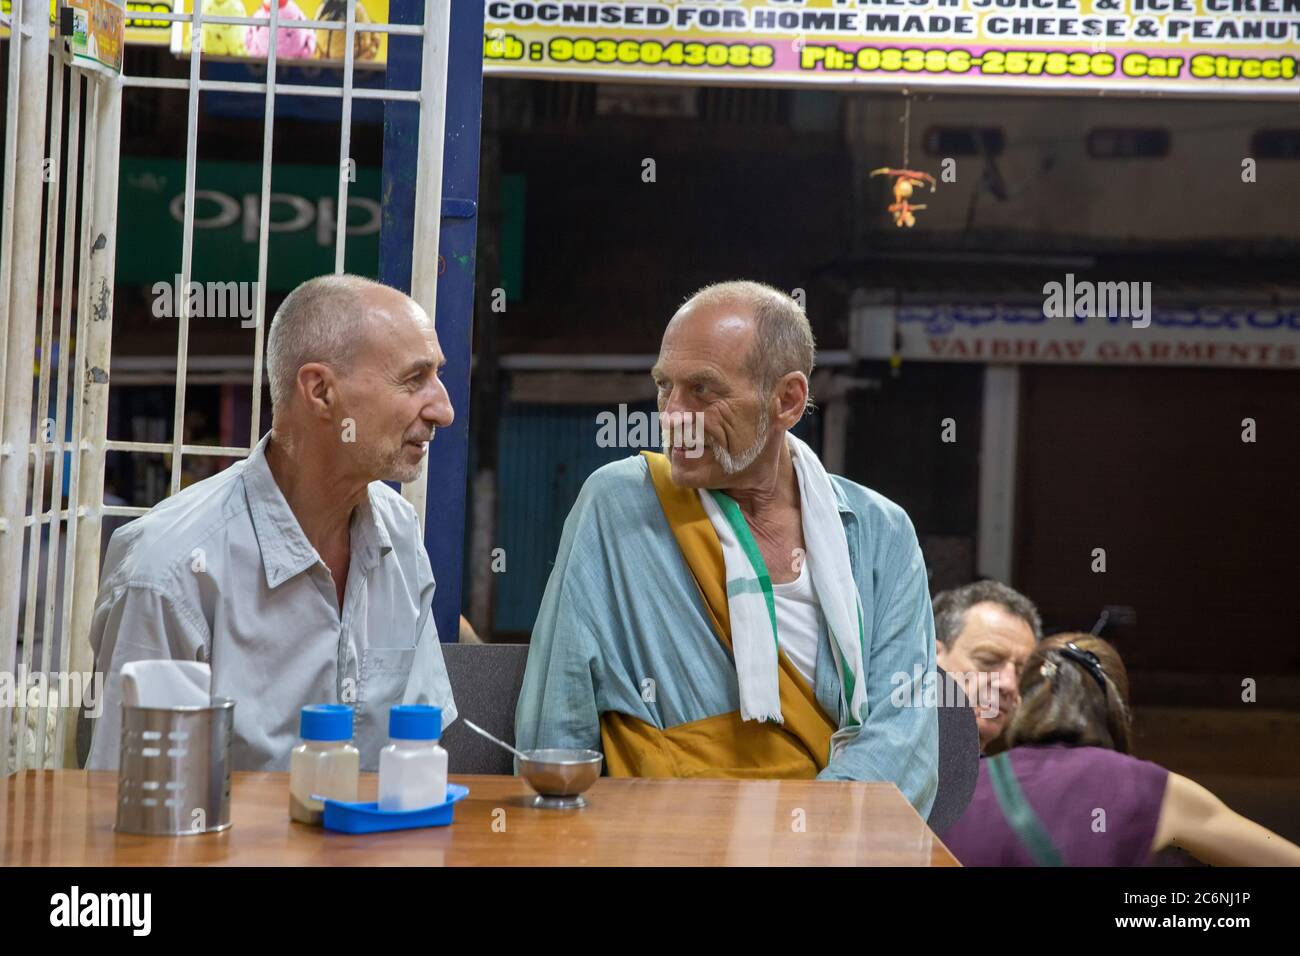 02/19/2019 Gokarna , Indien. Zwei Menschen mit europäischem Auftritt sprechen miteinander und lächeln in einem Café für den Abend. südindien. Stockfoto